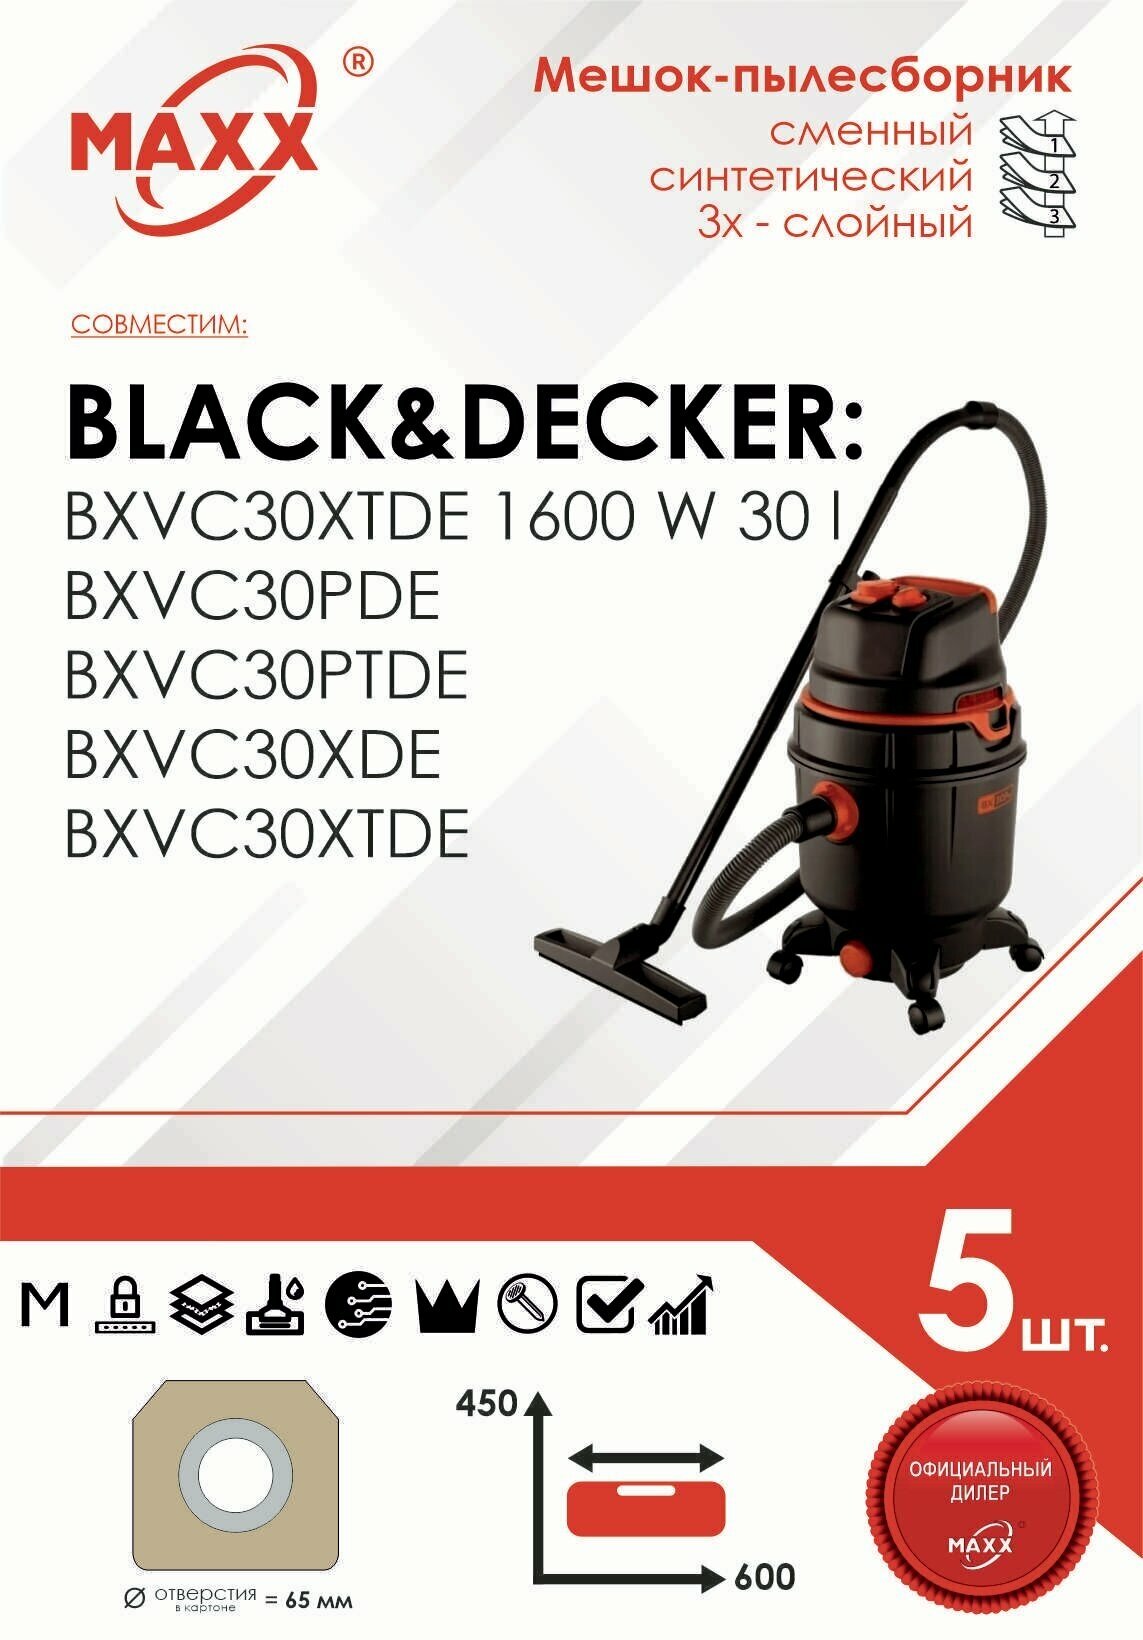 Мешок - пылесборник 5 шт. для пылесоса Black & Decker BXVC30, BXVC30PTDE